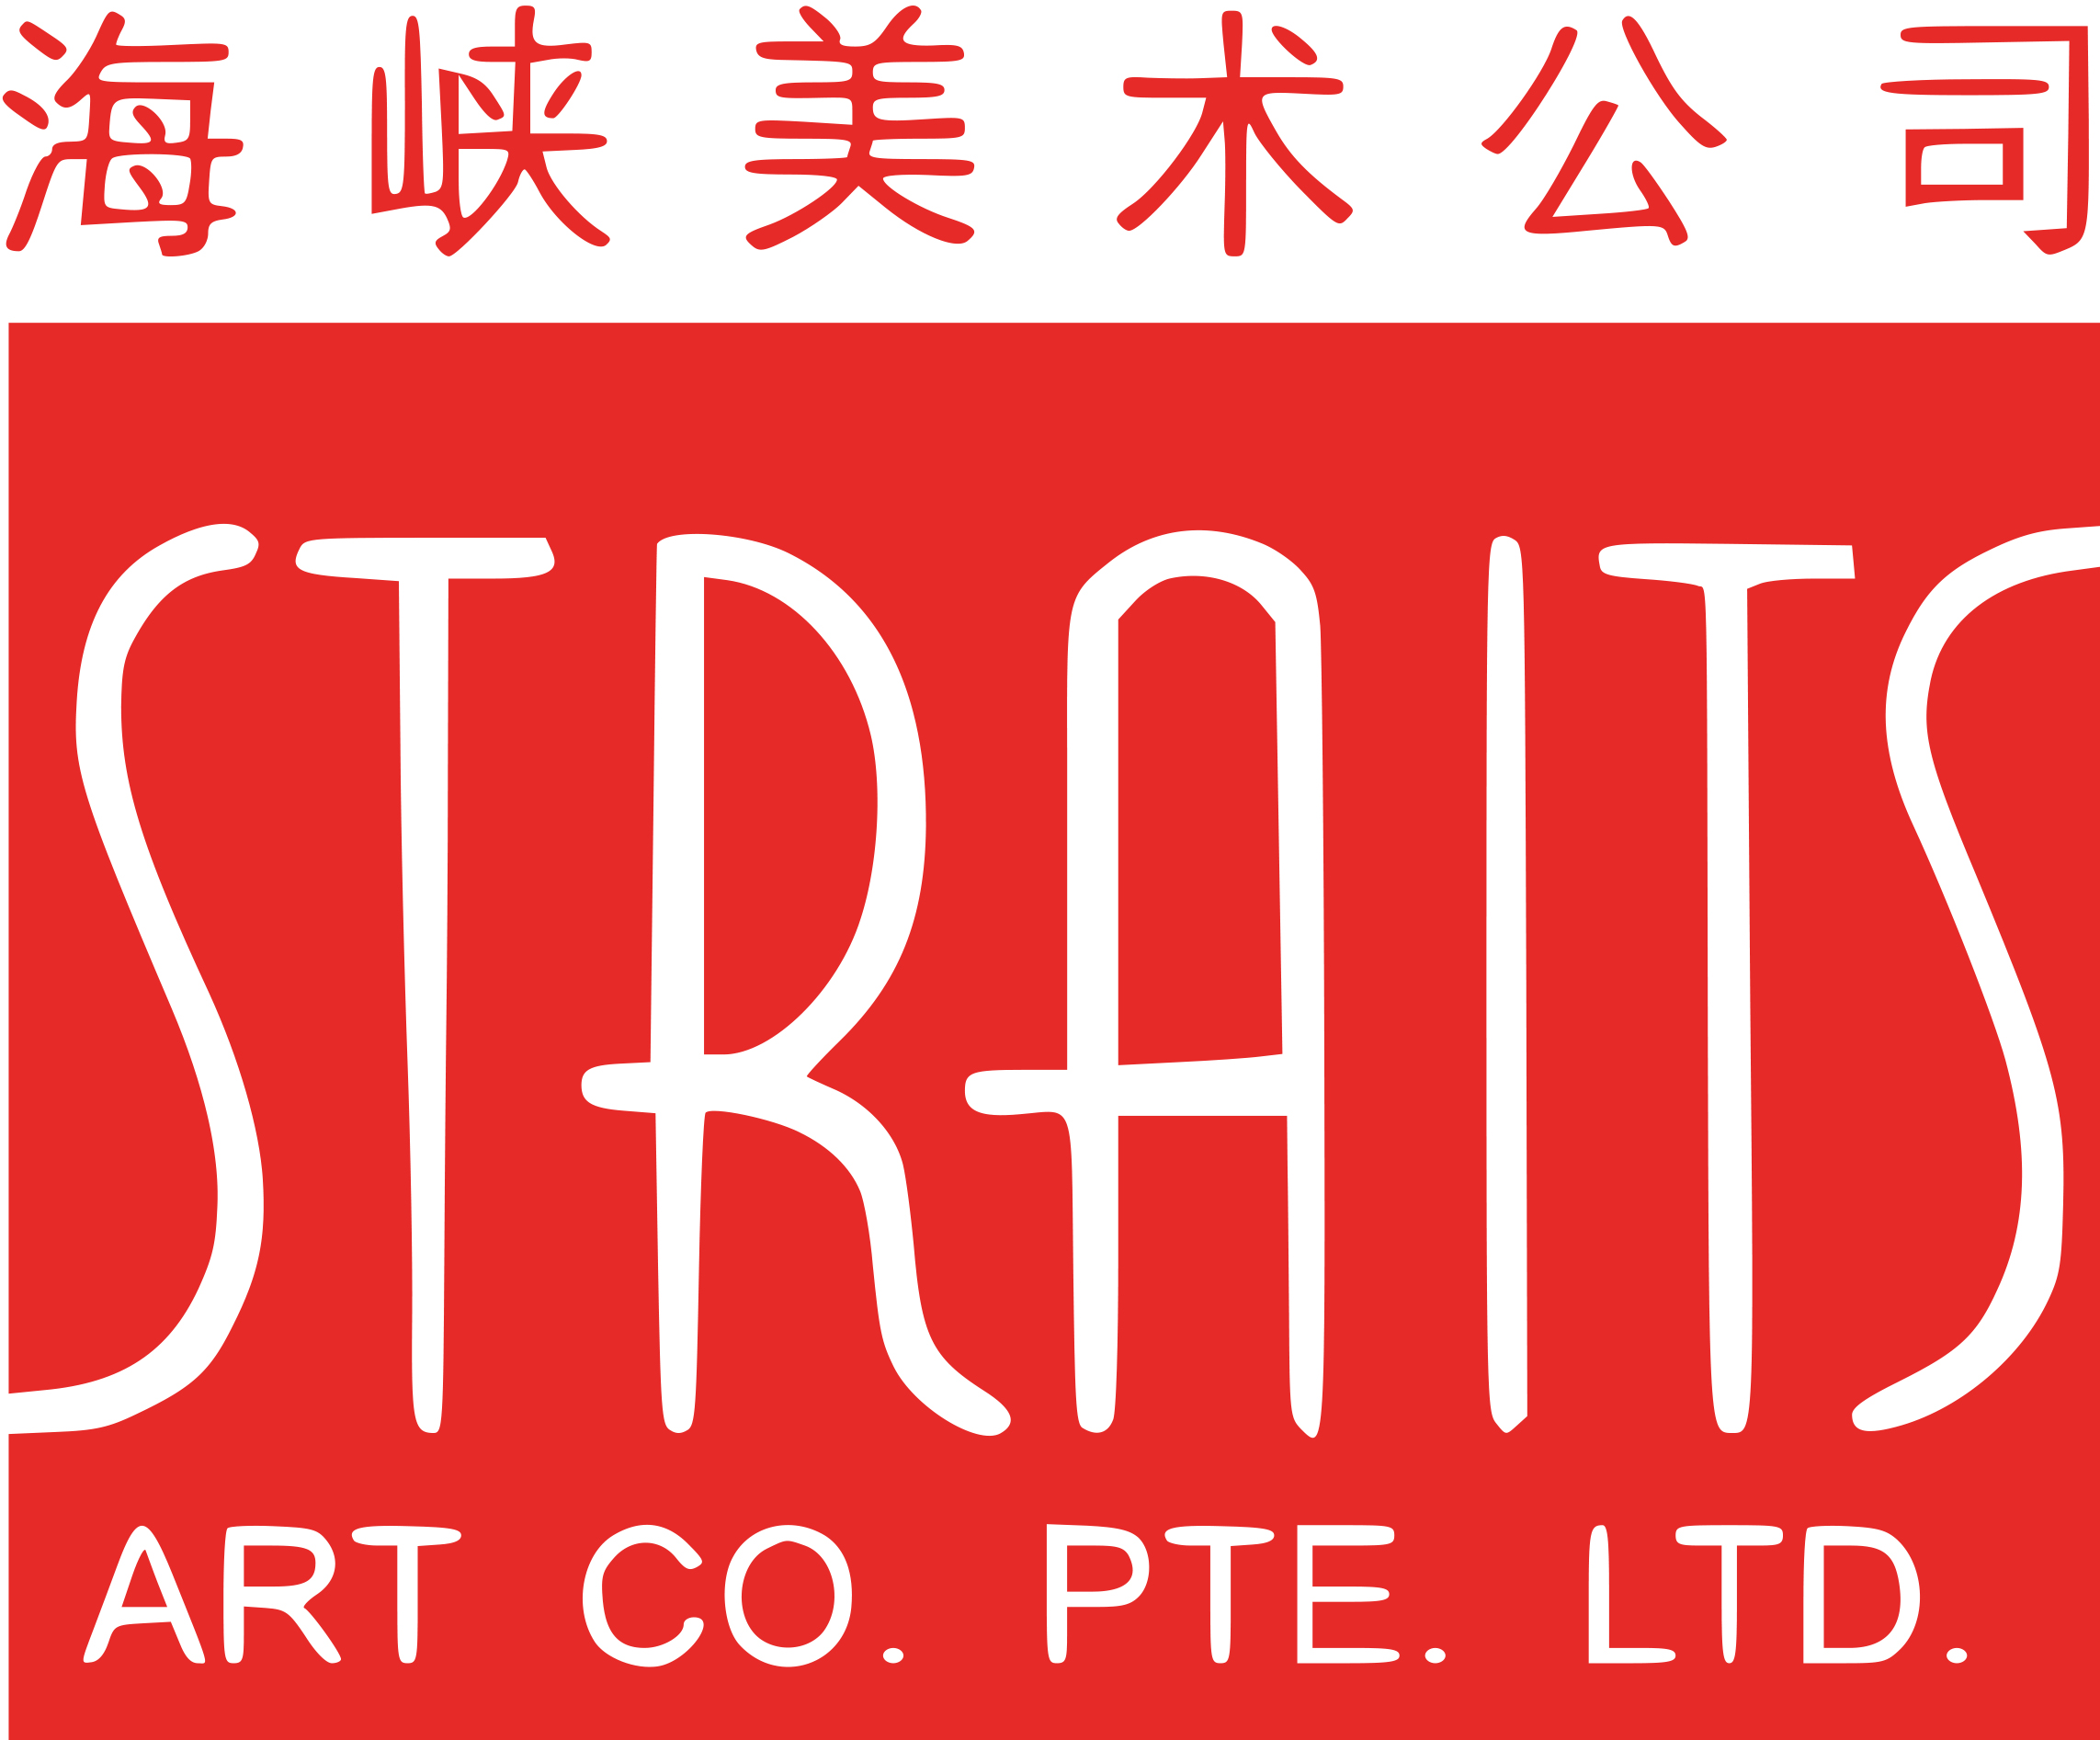 Straits Art